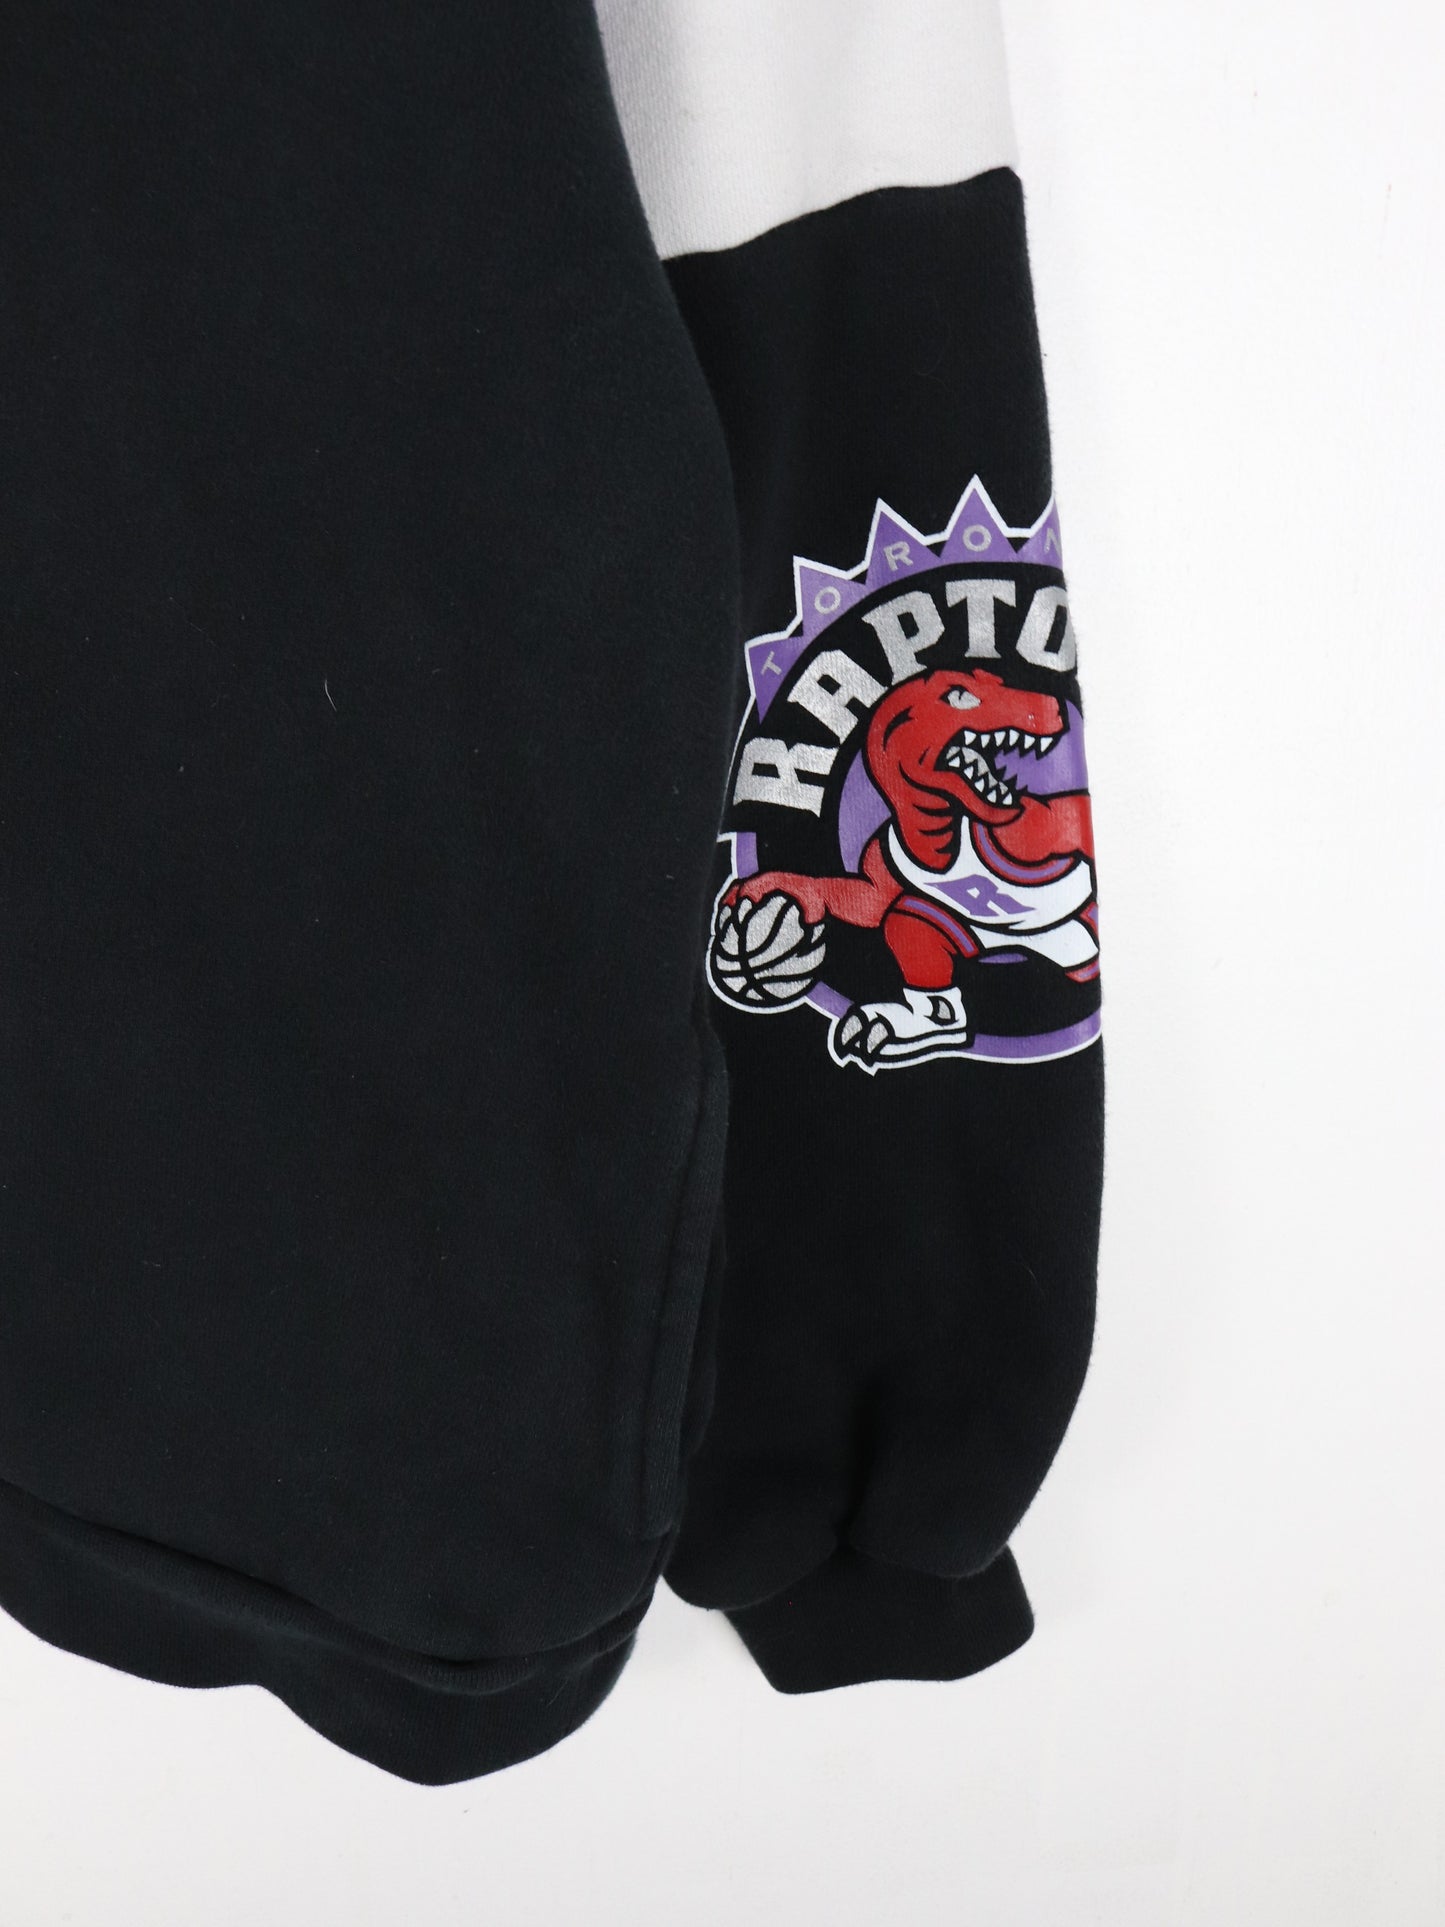 Toronto Raptors Sweatshirt Fits Mens Large Black NBA Hoodie